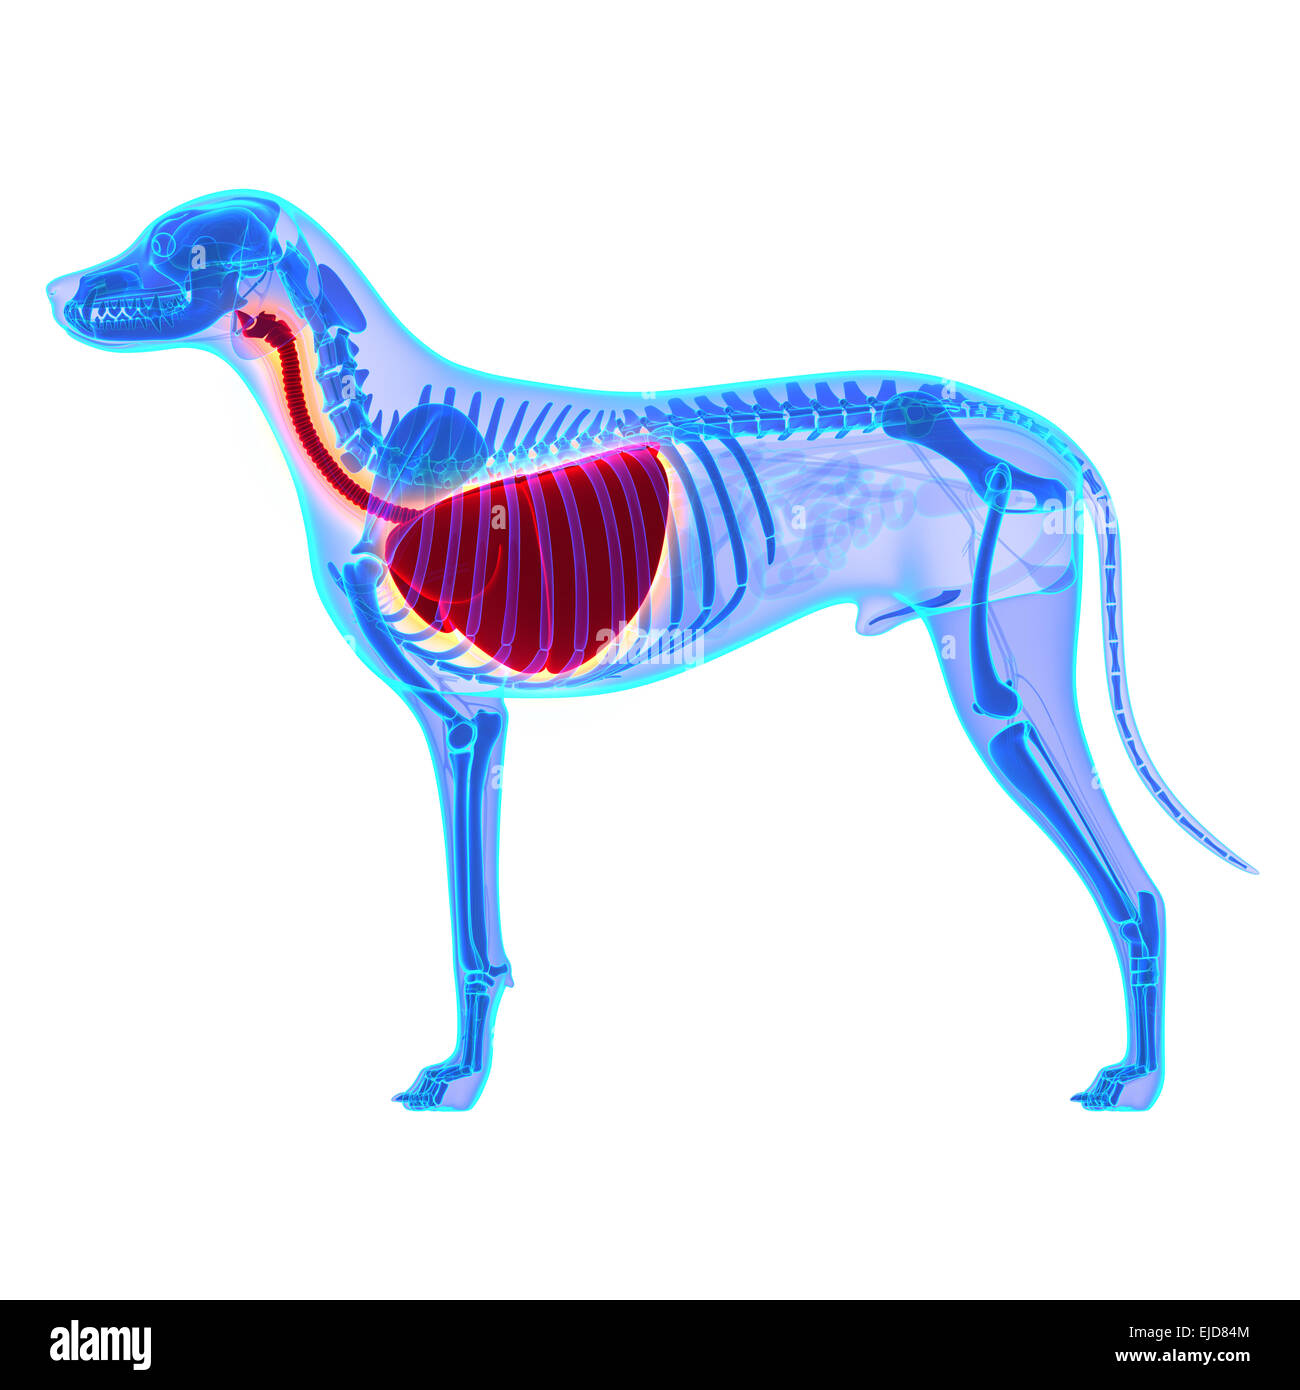 Torace del cane / polmoni anatomia - Canis lupus Familiaris anatomia - isolato su bianco Foto Stock